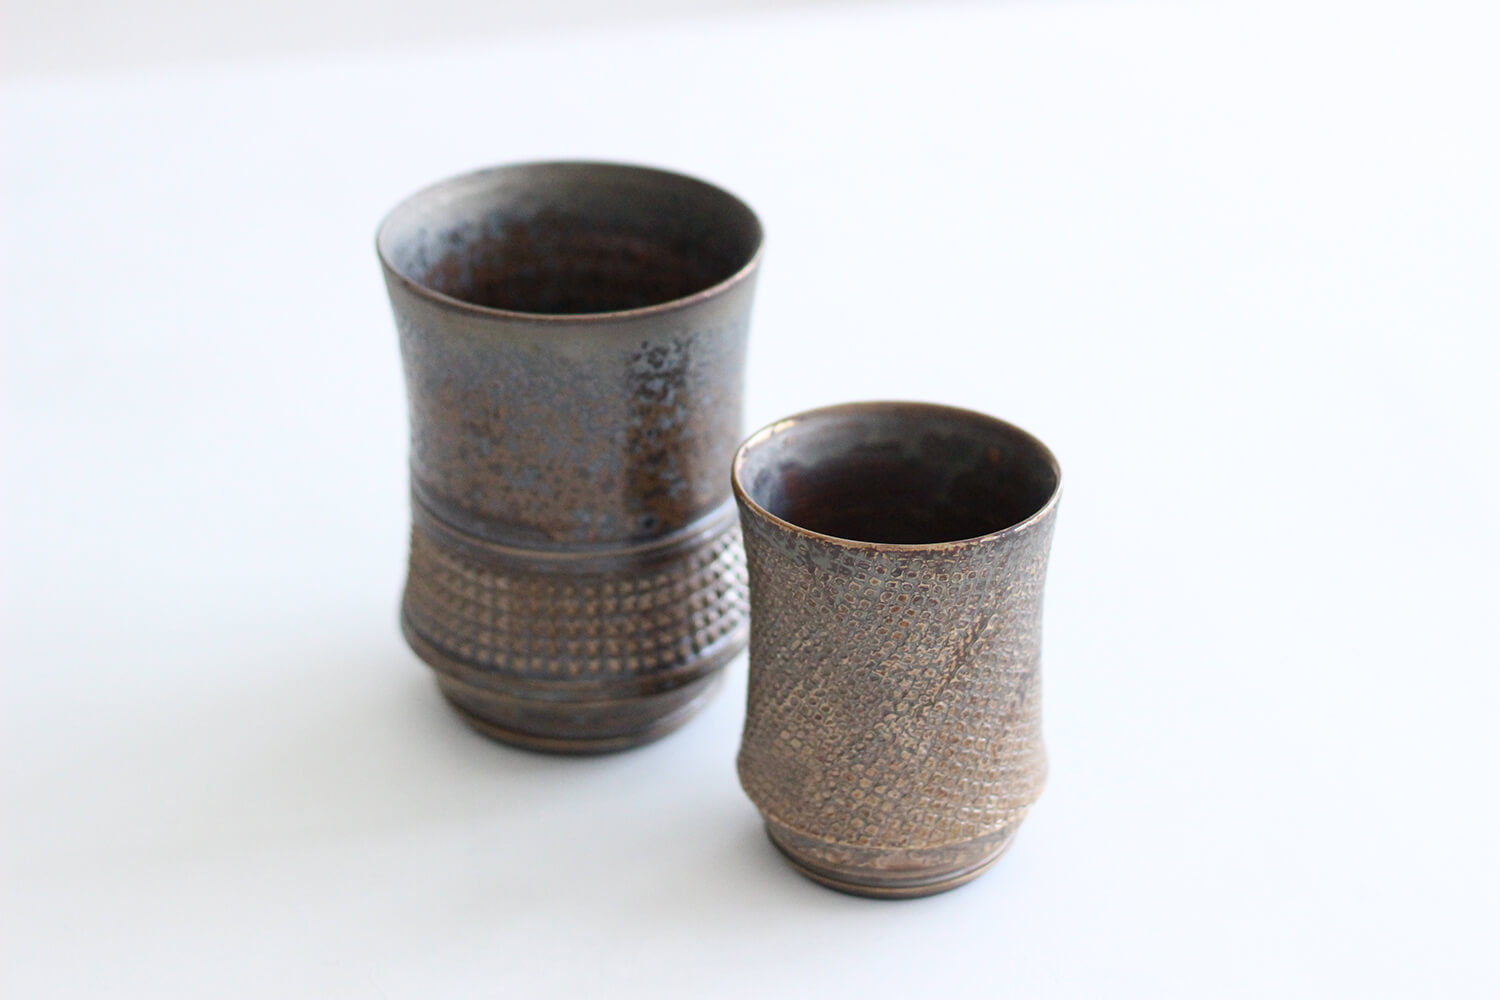 人気萩焼作家・濱中史朗のカップ。洗練されたデザインで存在感のある萩焼は高く評価されている